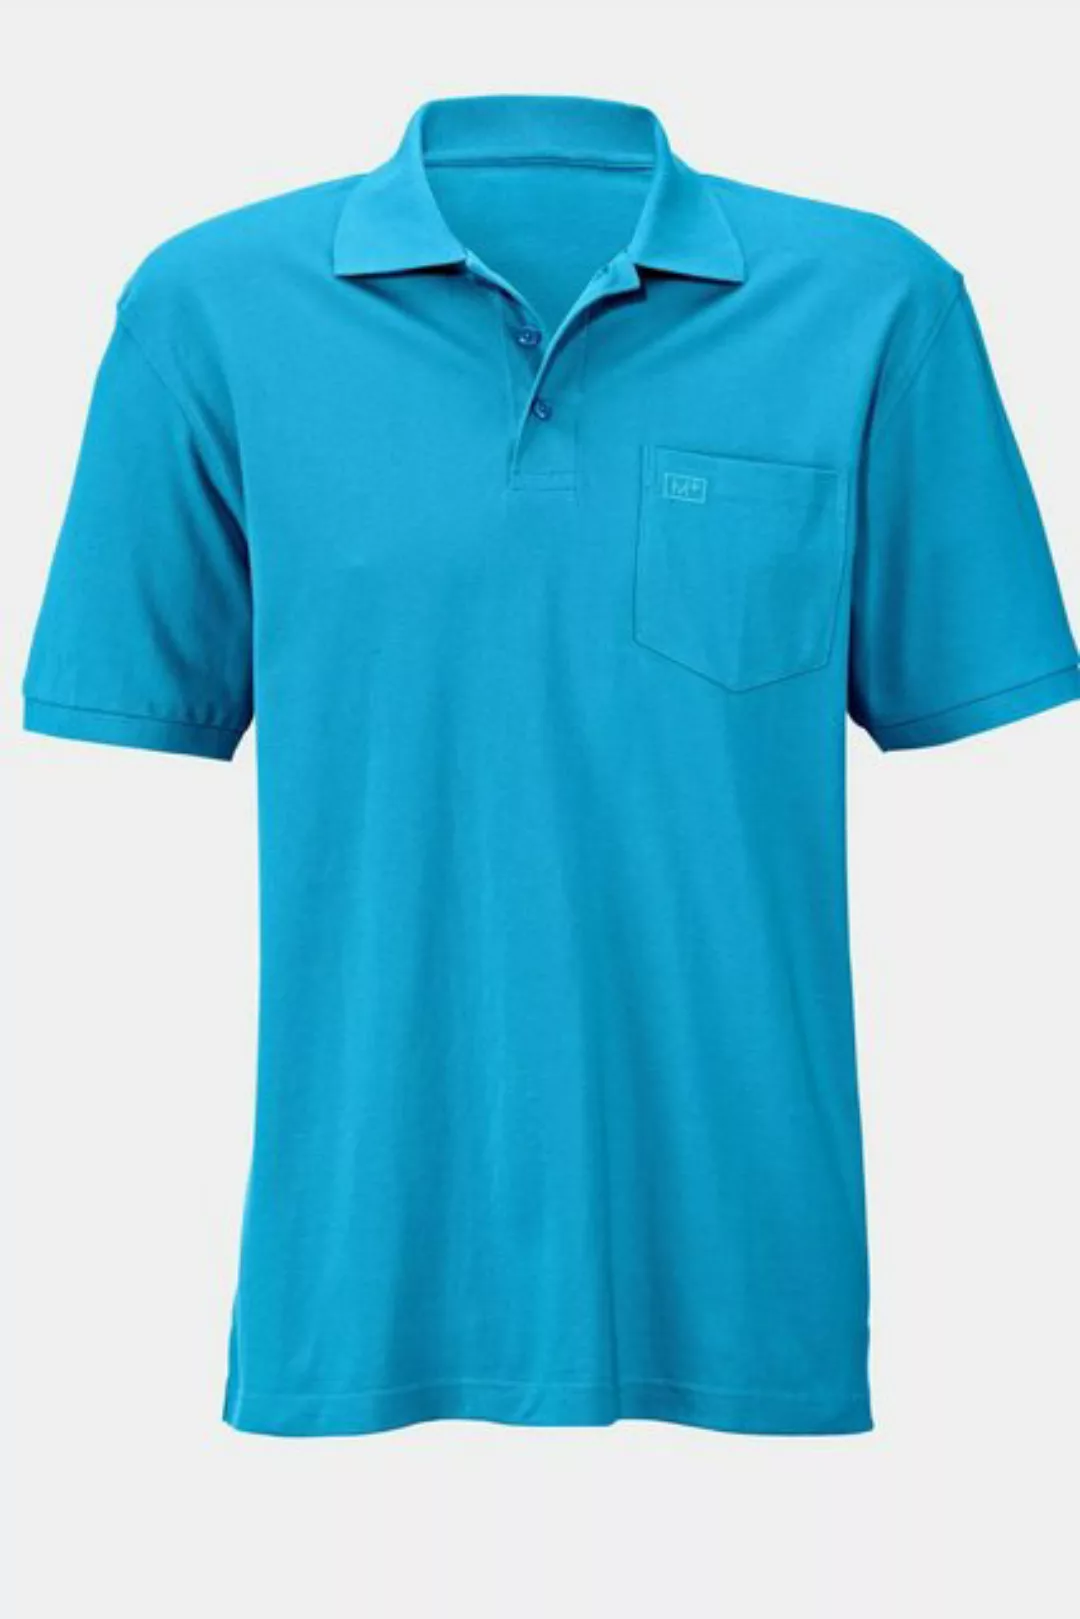 Men Plus Poloshirt Men+ Poloshirt Halbarm Polokragen bis 84/86 günstig online kaufen